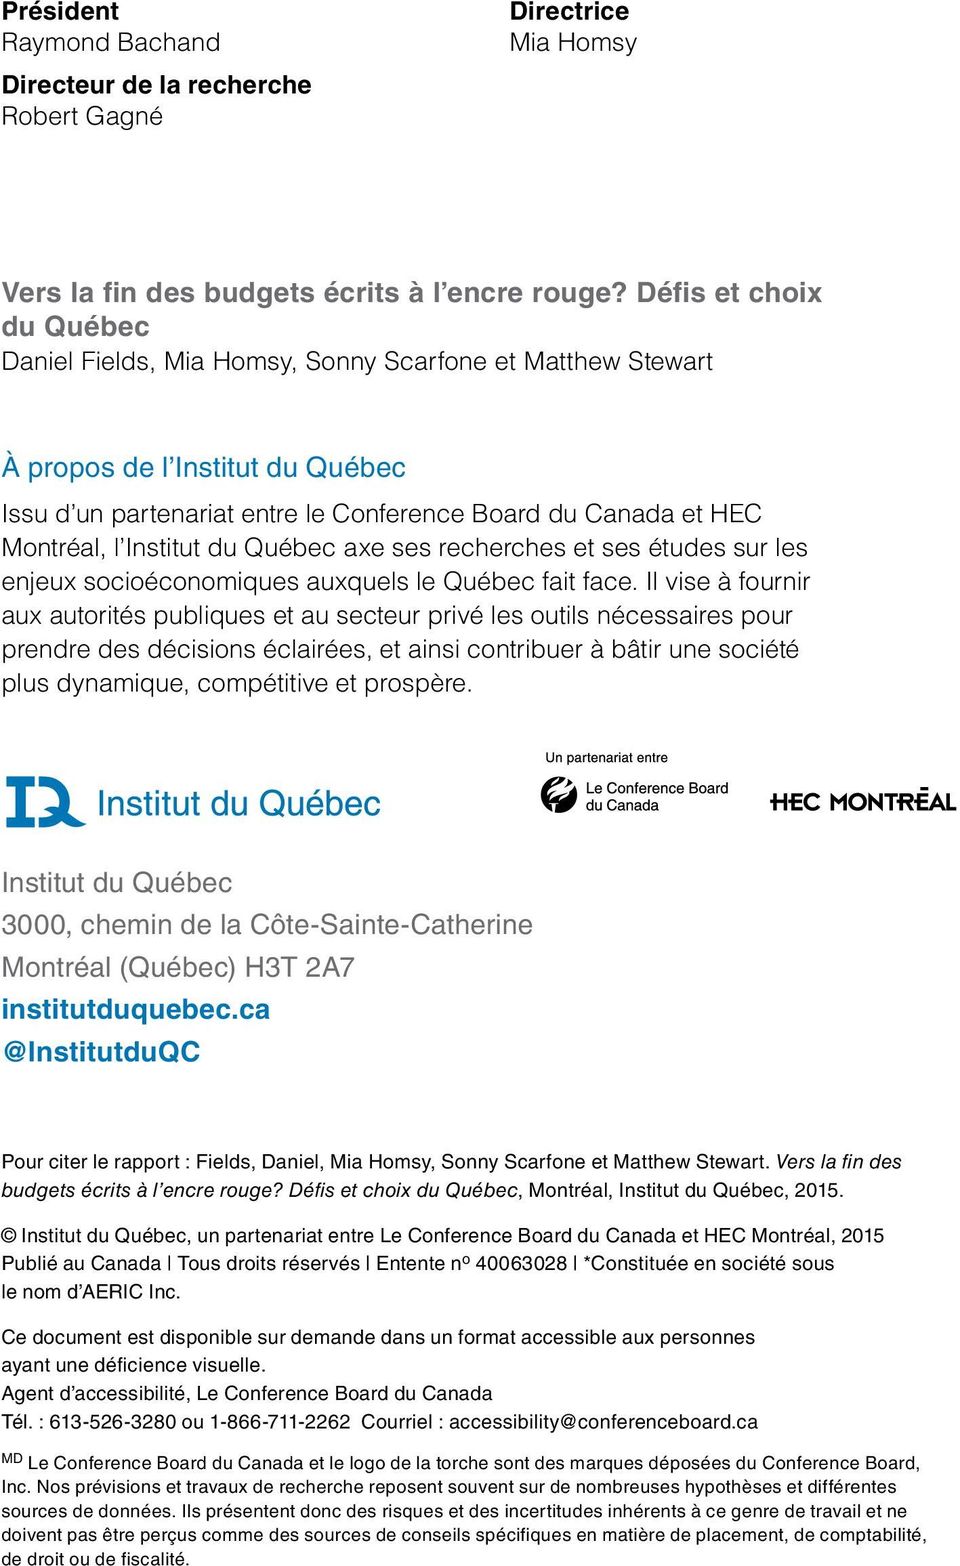 Institut du Québec axe ses recherches et ses études sur les enjeux socioéconomiques auxquels le Québec fait face.